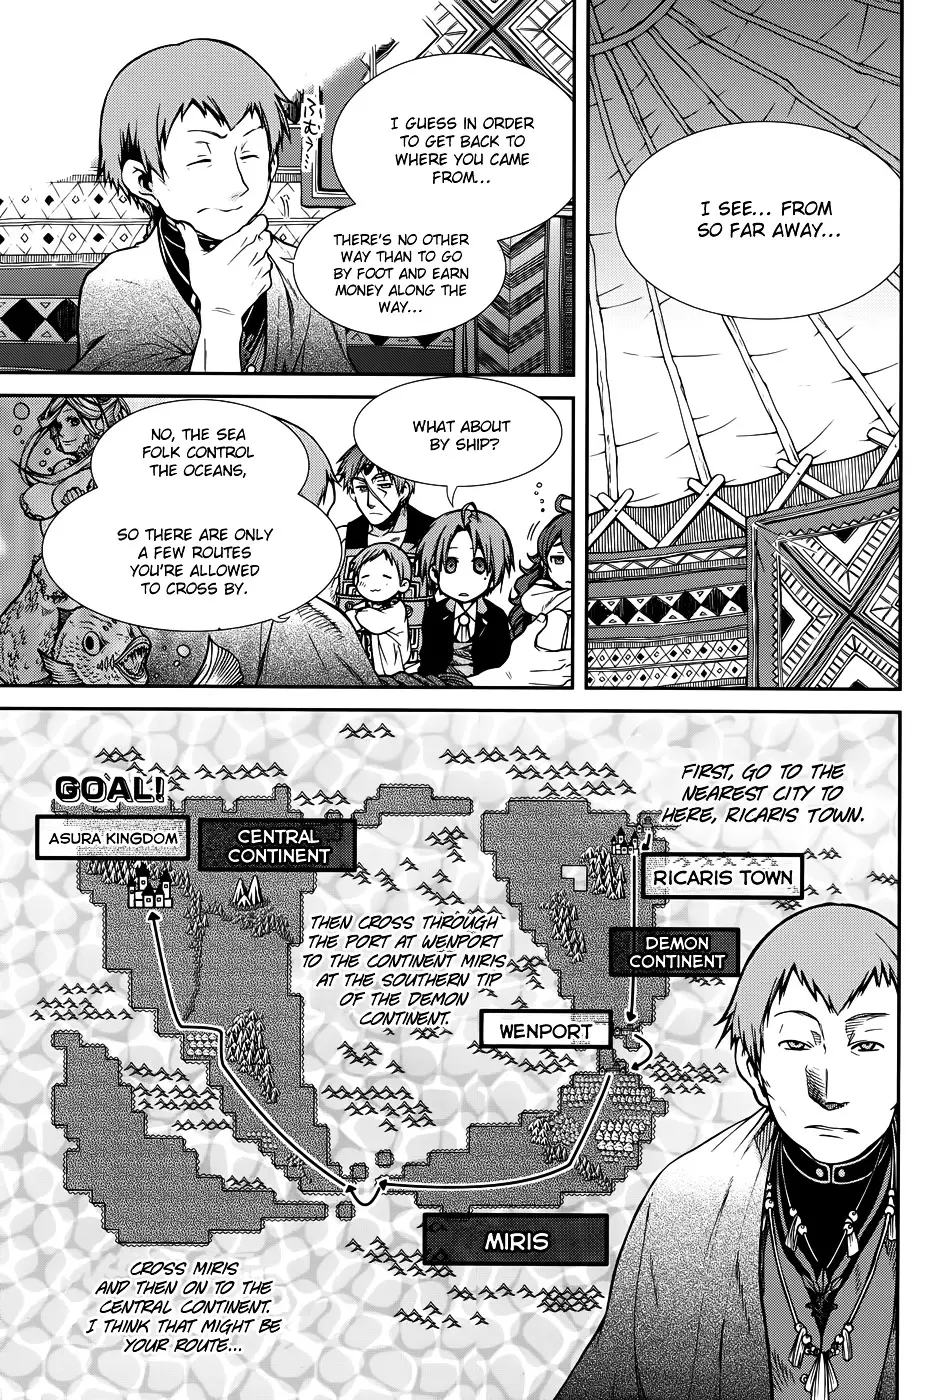 Mushoku Tensei - Isekai Ittara Honki Dasu - 19 page 11